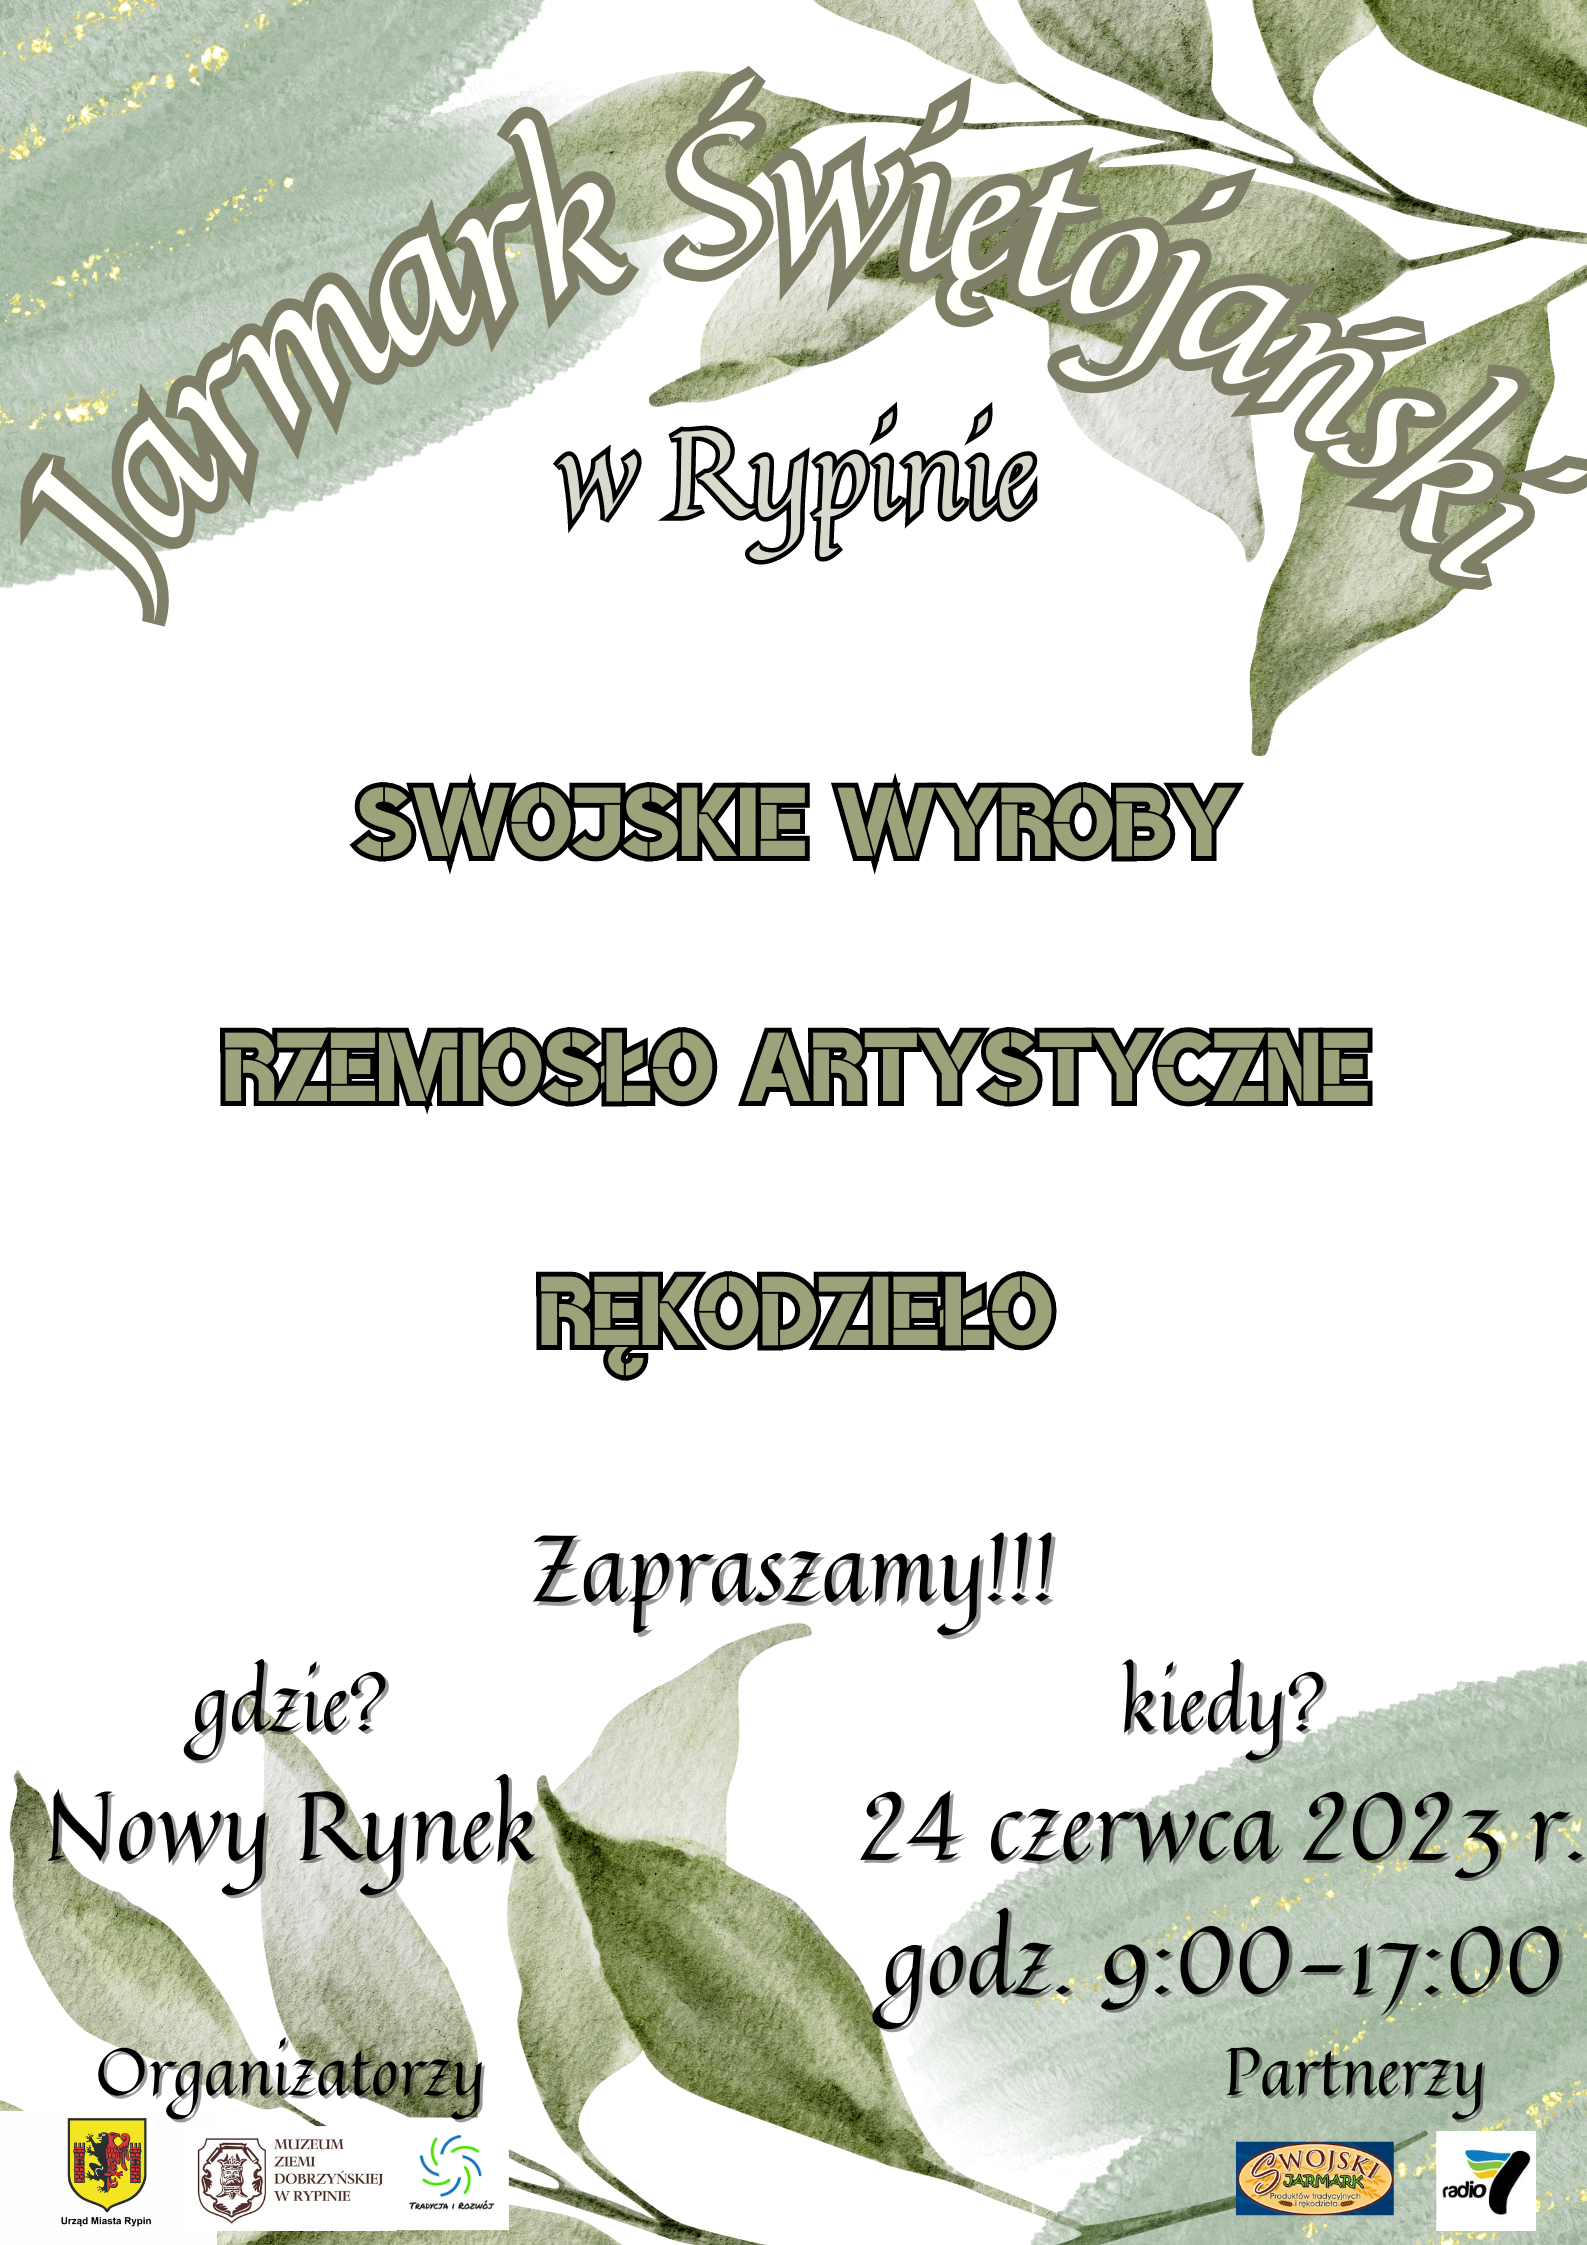 Obrazek przedstawia plakat zapraszający na Jarmark Świętojański. W tle zielone liście